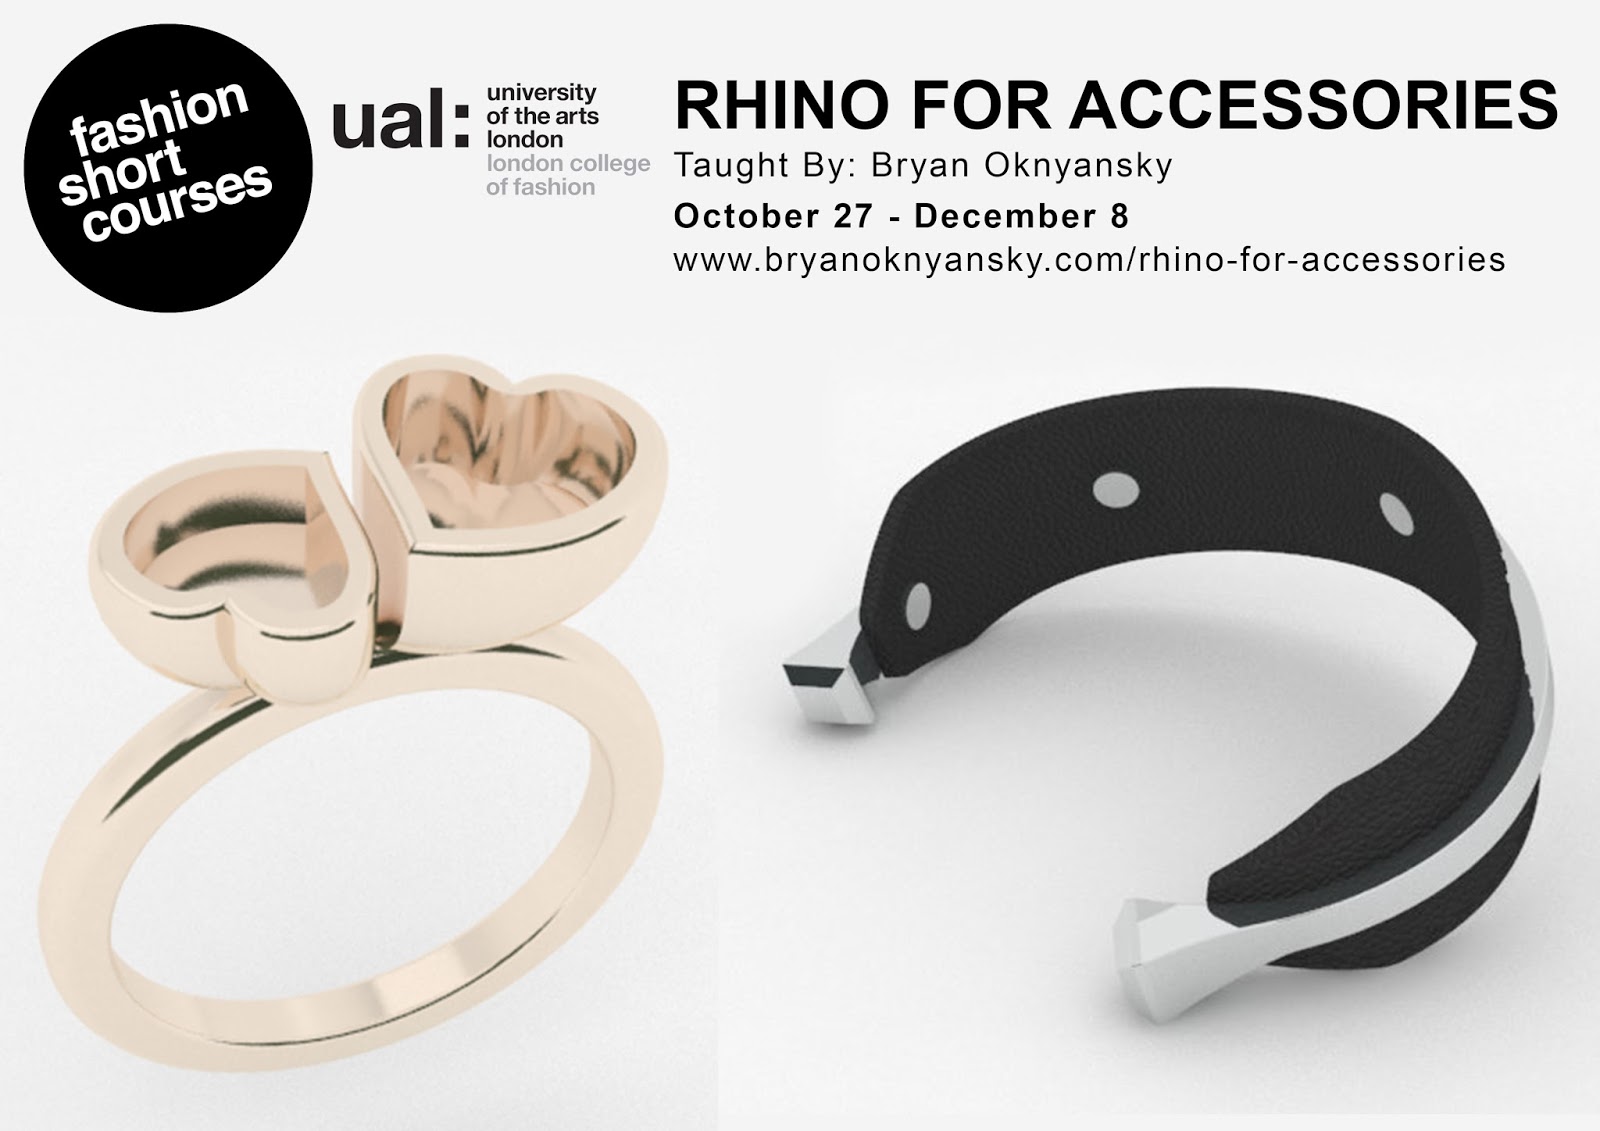 Rhino for accessories